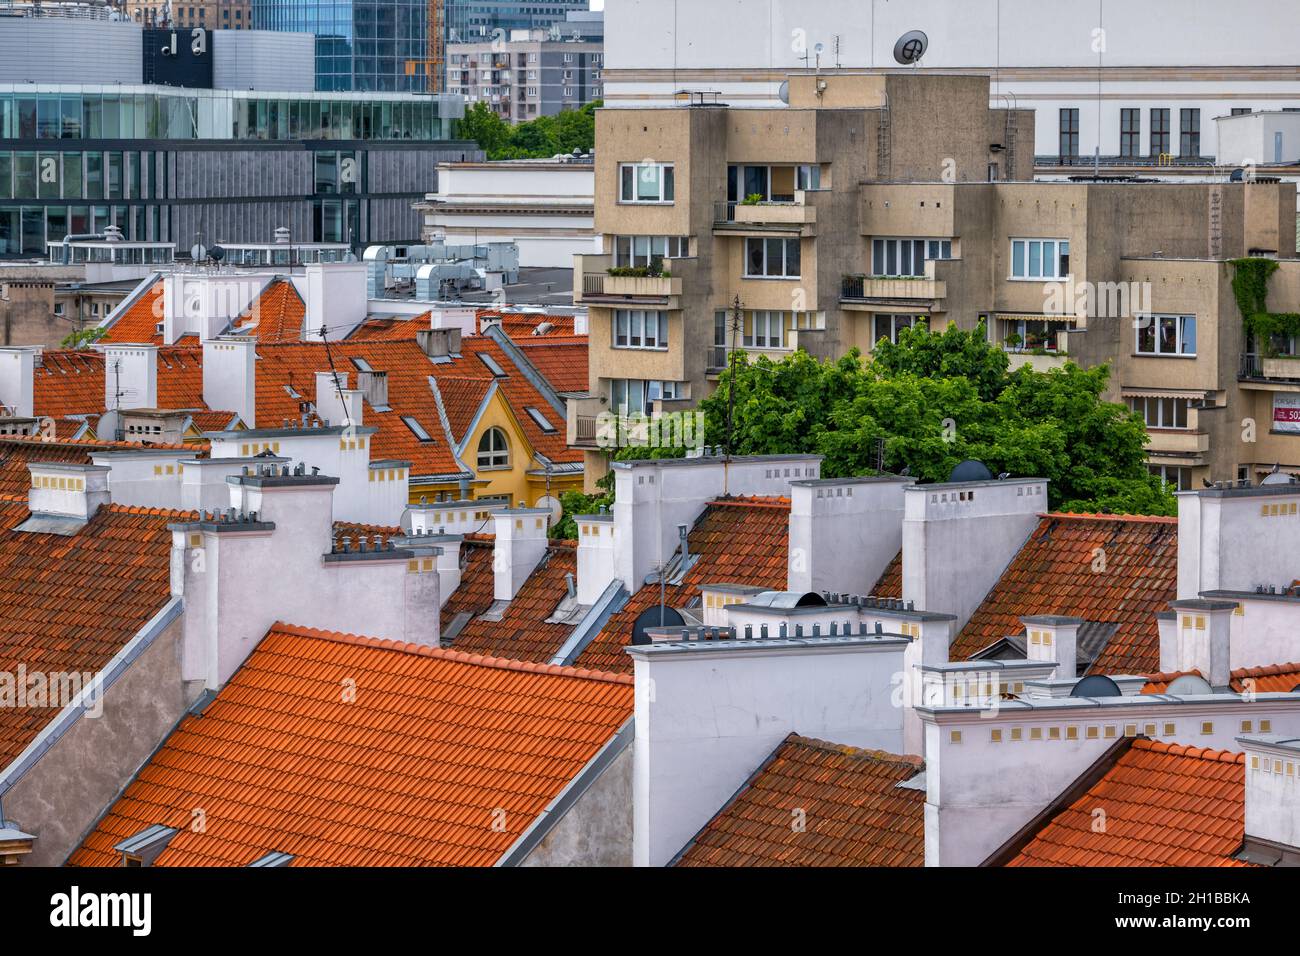 Toits de tuiles rouges et cheminées blanches de maisons et immeubles d'appartements, architecture résidentielle dans le centre-ville de Varsovie en Pologne. Banque D'Images